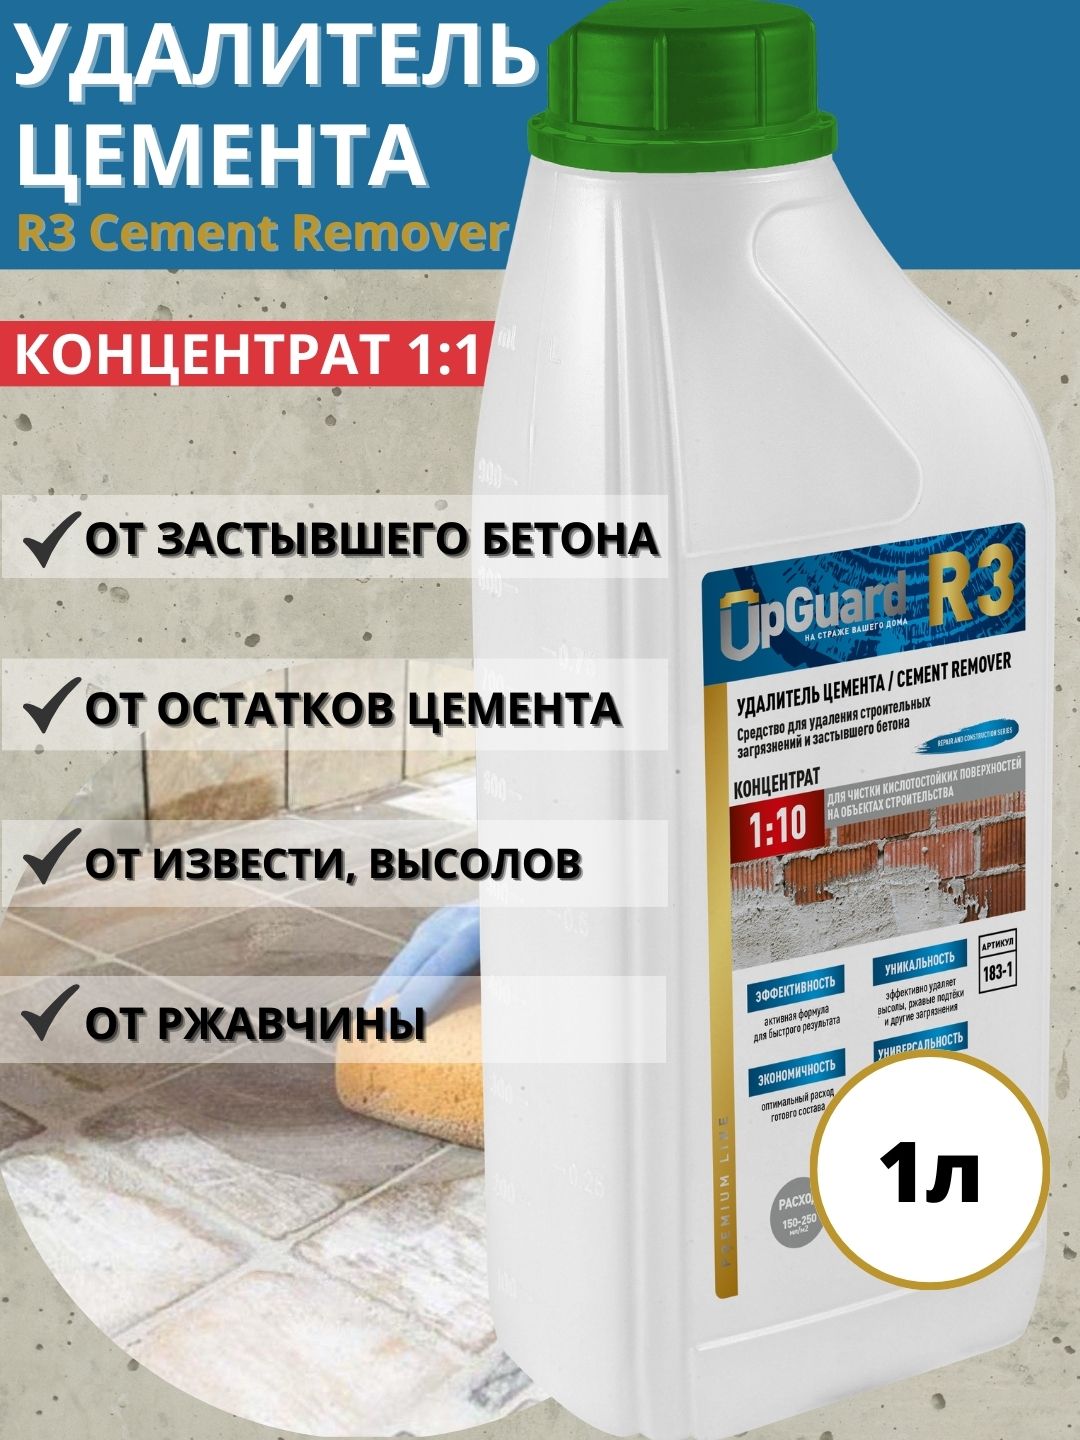 Удалитель цемента UpGUARD R3 Cement Remover концентрат 1:10, 1л удалитель цемента prosept cement cleaner готовый раствор 0 5л